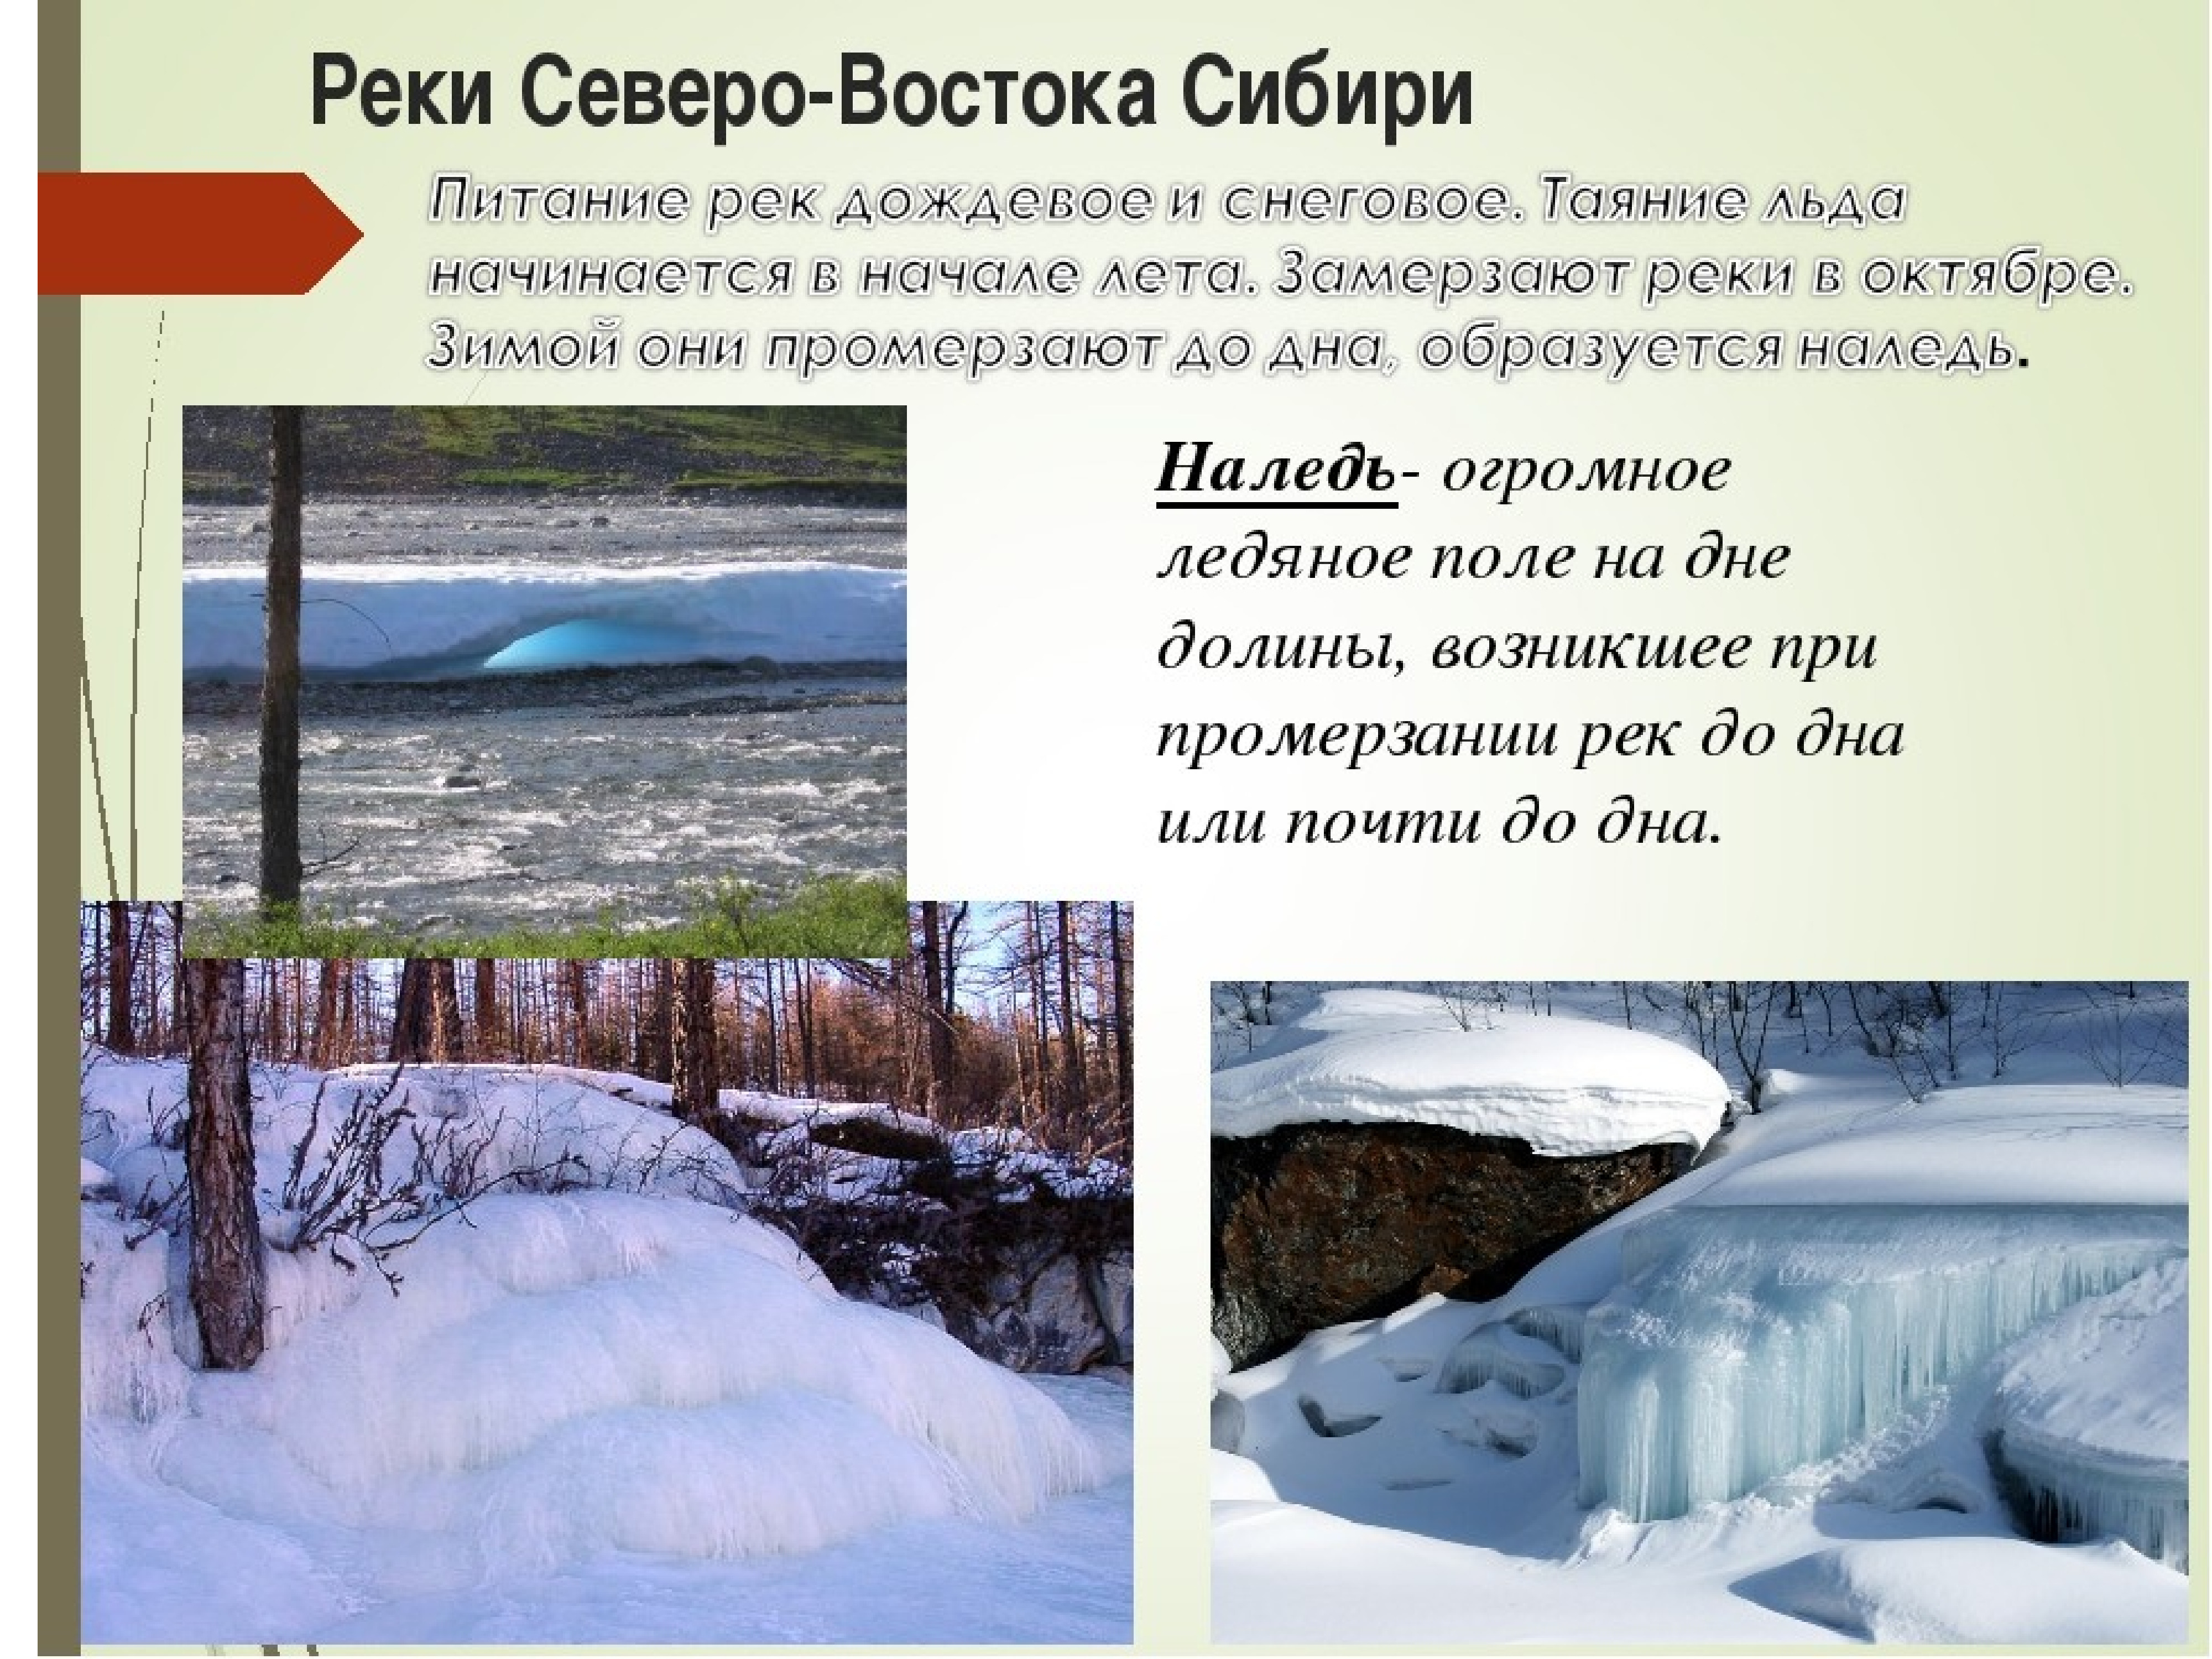 Юкон и маккензи имеют снеговое питание. Реки северовосоосной Стбири. Реки Северо Восточной Сибири. Реки на Северо востоке России. Внутренние воды Северной Сибири.